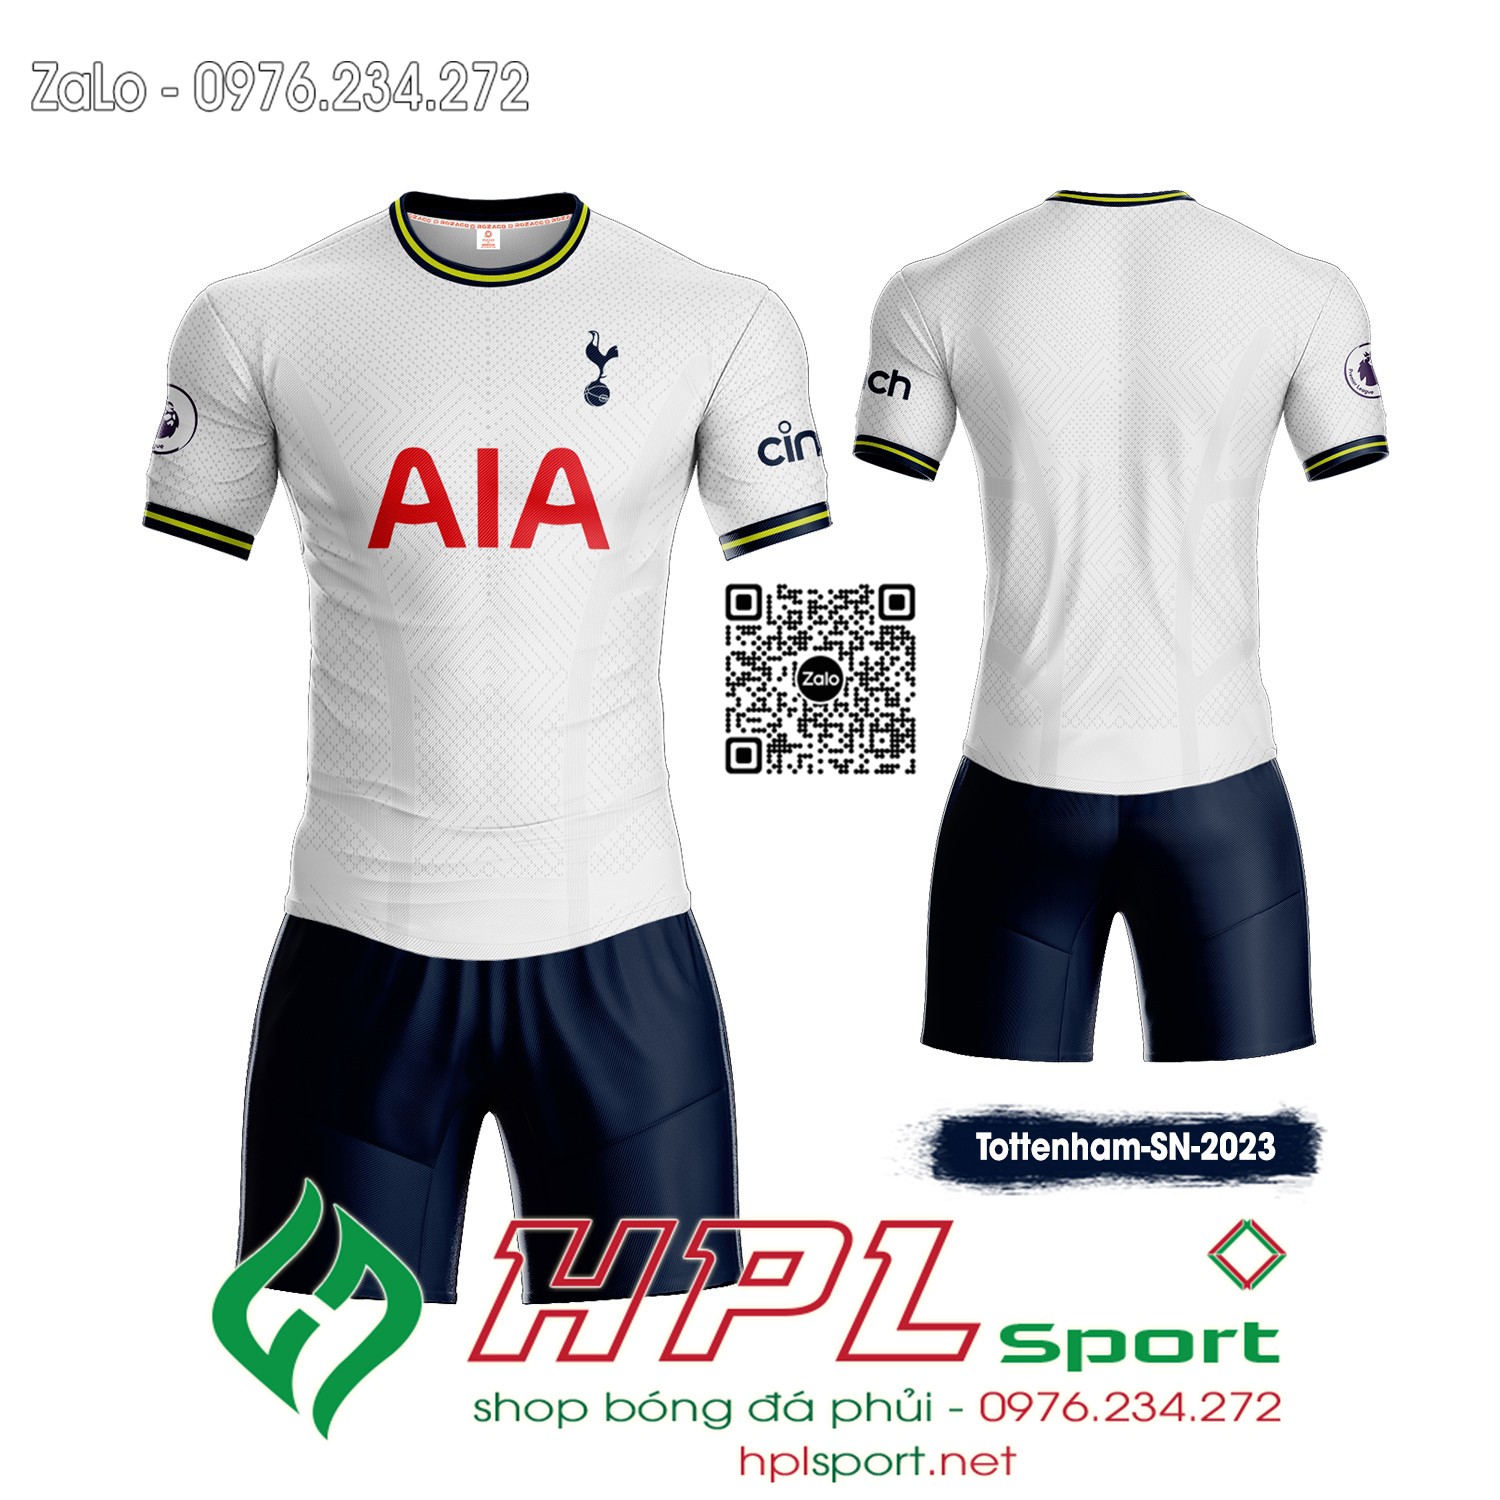 Mẫu áo đá banh CLB Tottenham sân nhà màu trắng